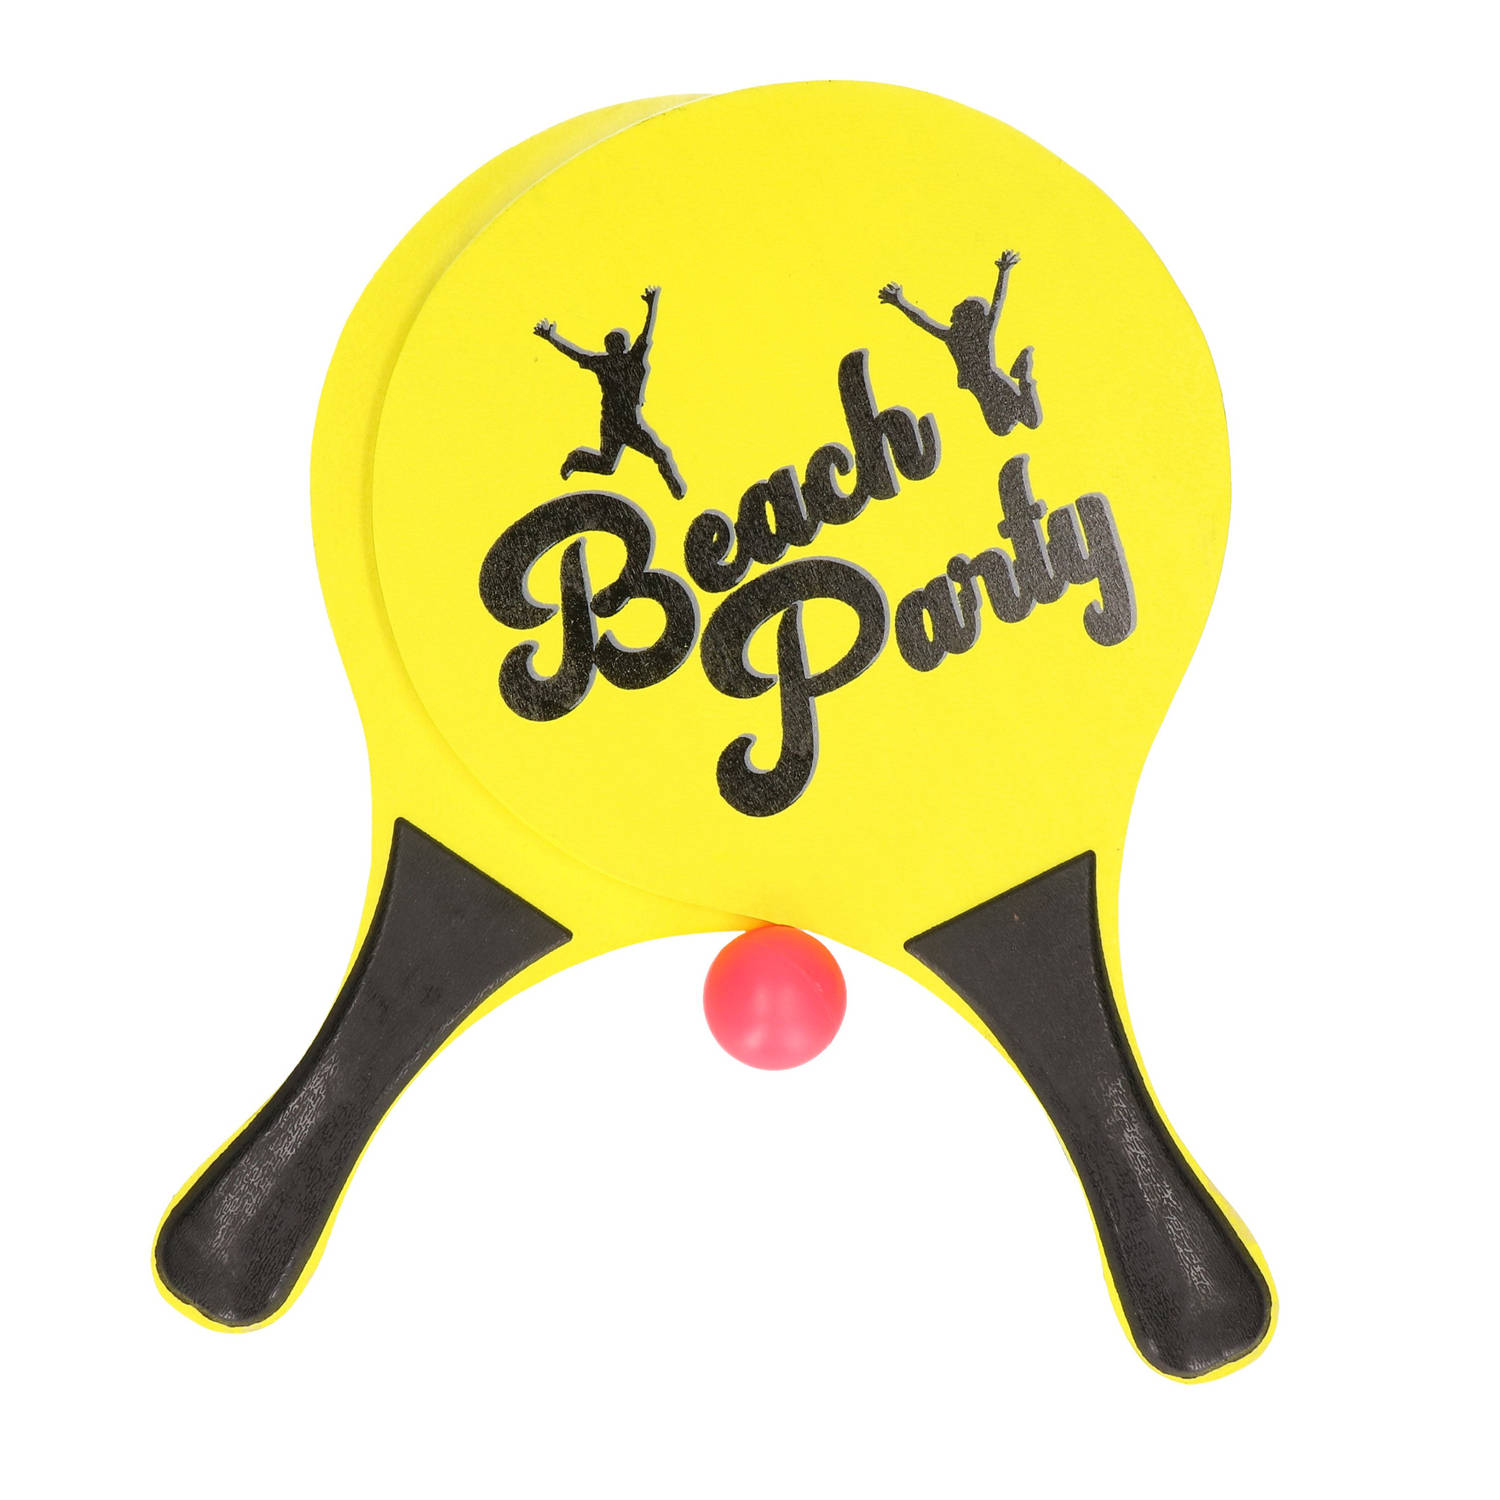 Actief speelgoed tennis/beachball setje geel - Beachballsets